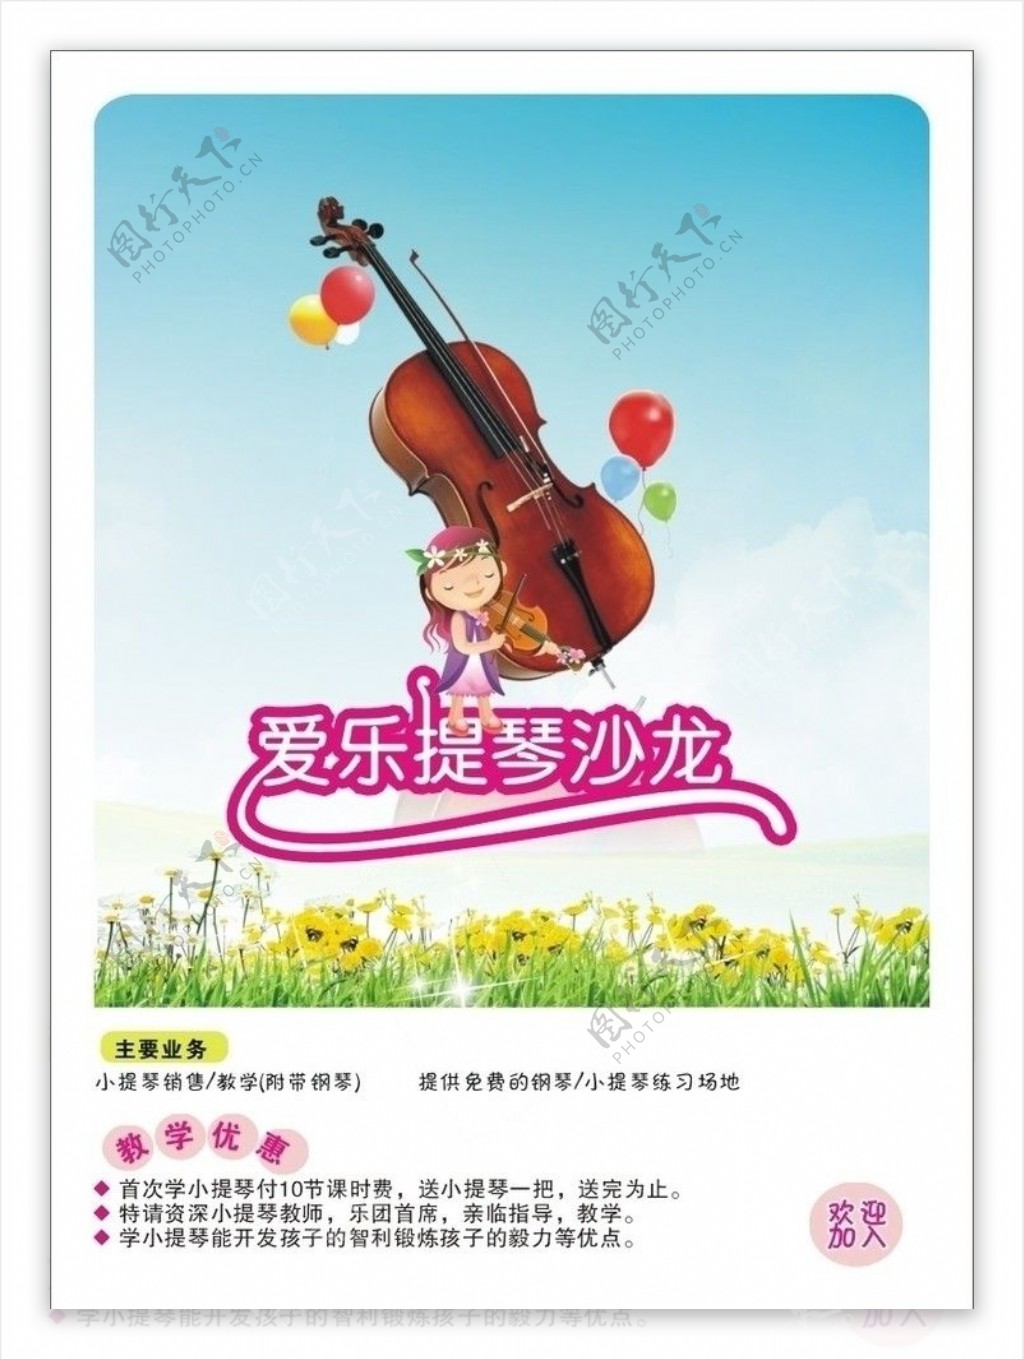 爱乐提琴沙龙DM传单图片